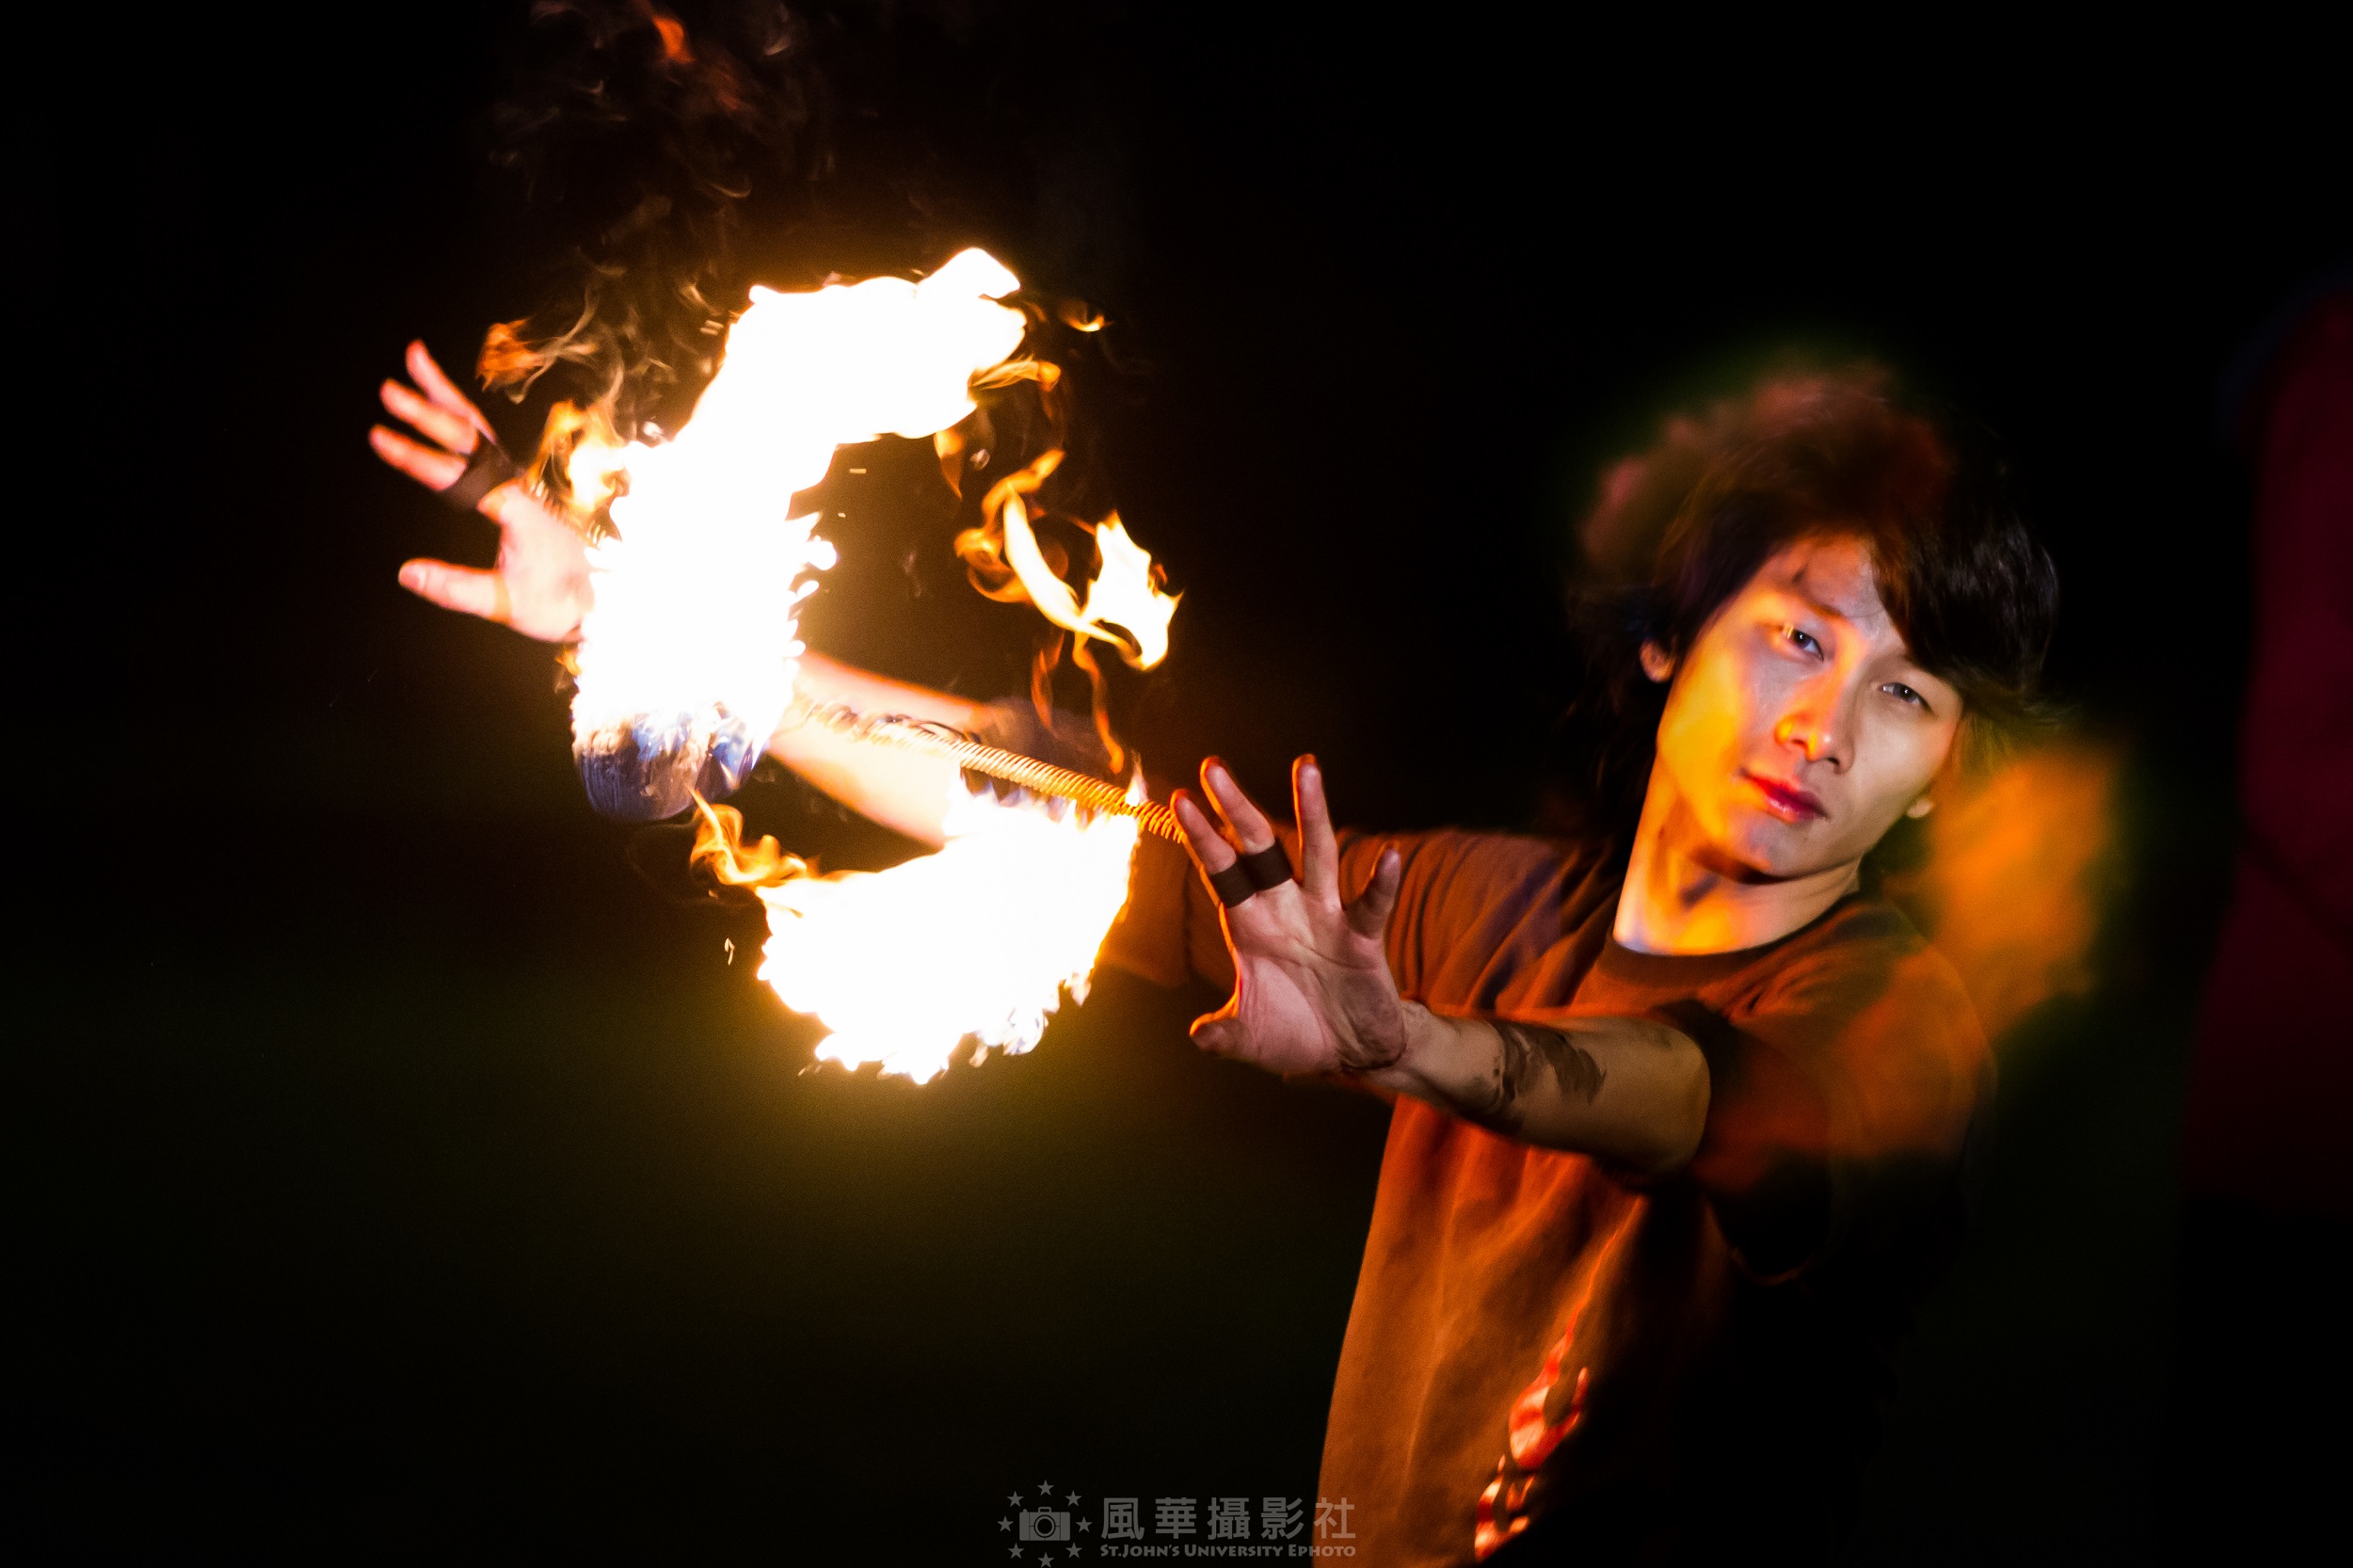 來自香港的陳立衡同學深深為這項藝術文化所著迷，希望能將創意結合火舞表演，把這麼美麗的火舞藝術帶回香港（圖：聖約大風華攝影社）